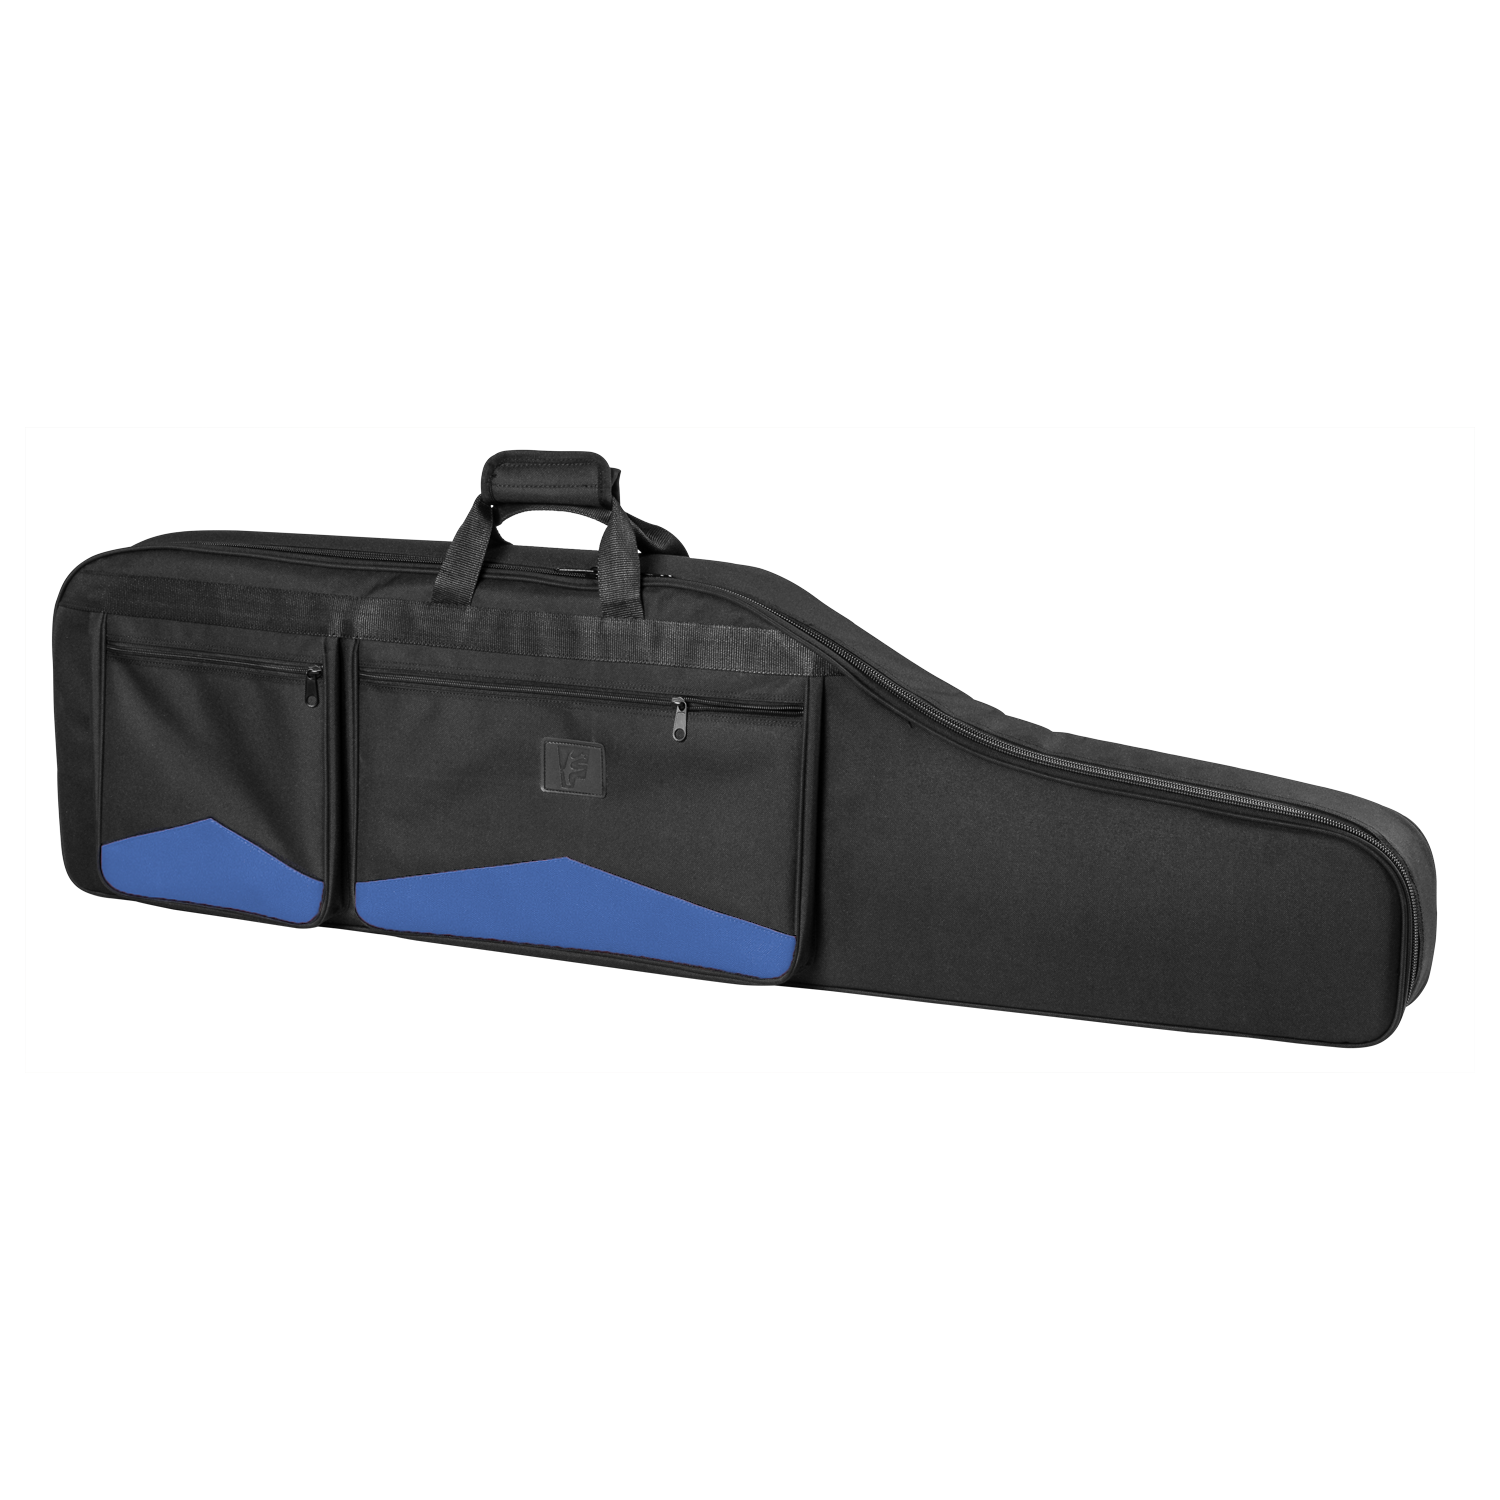 Gewehrtasche Fritzmann  aus Nylon mit gepolsterten Nylonfutter Stgw57 - schwarz/blau